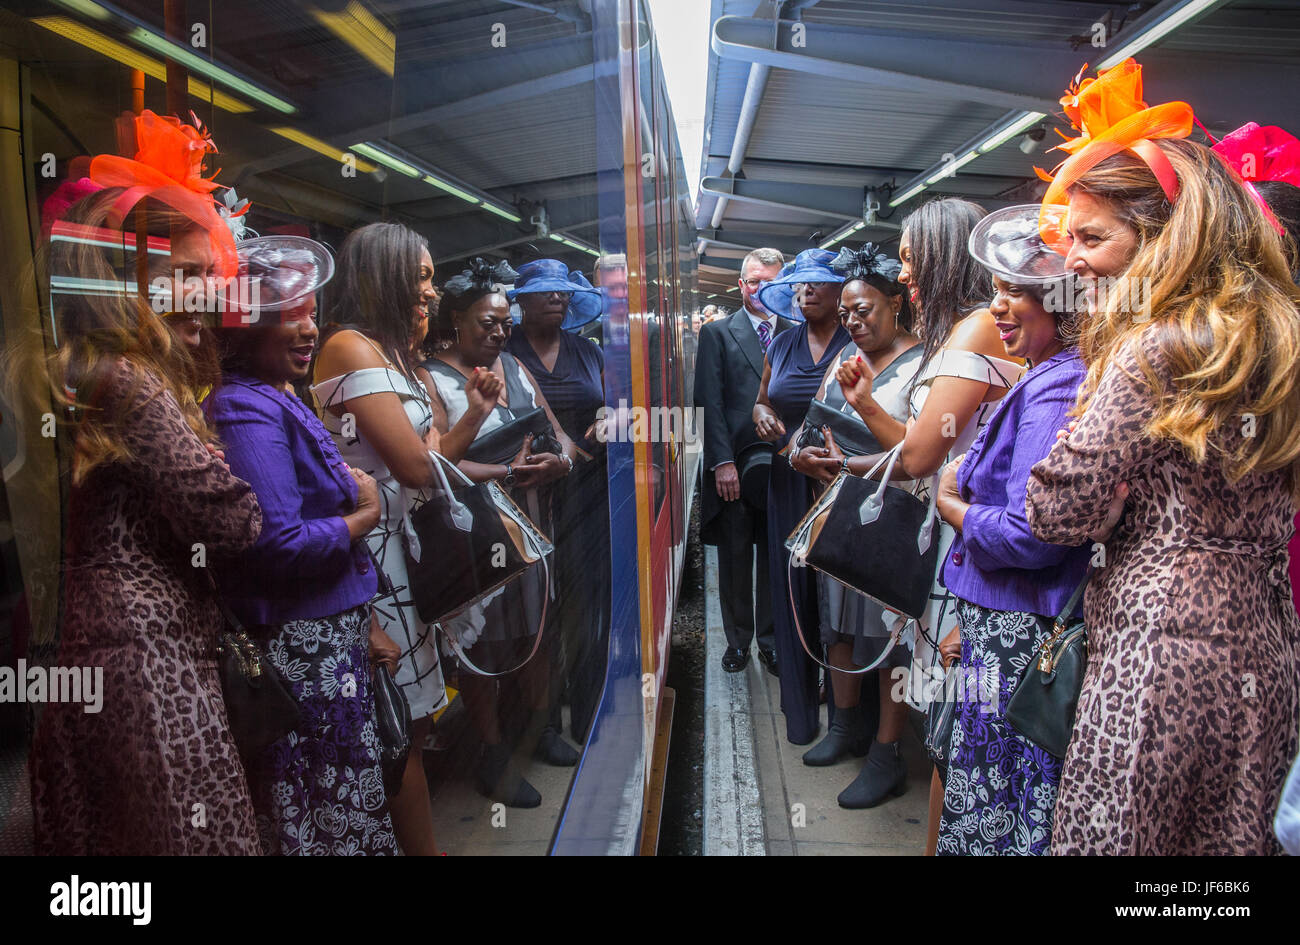 Racegoers a Londra Waterloo sul loro modo di Royal Ascot sul Signore giorno in attesa a bordo del treno Foto Stock